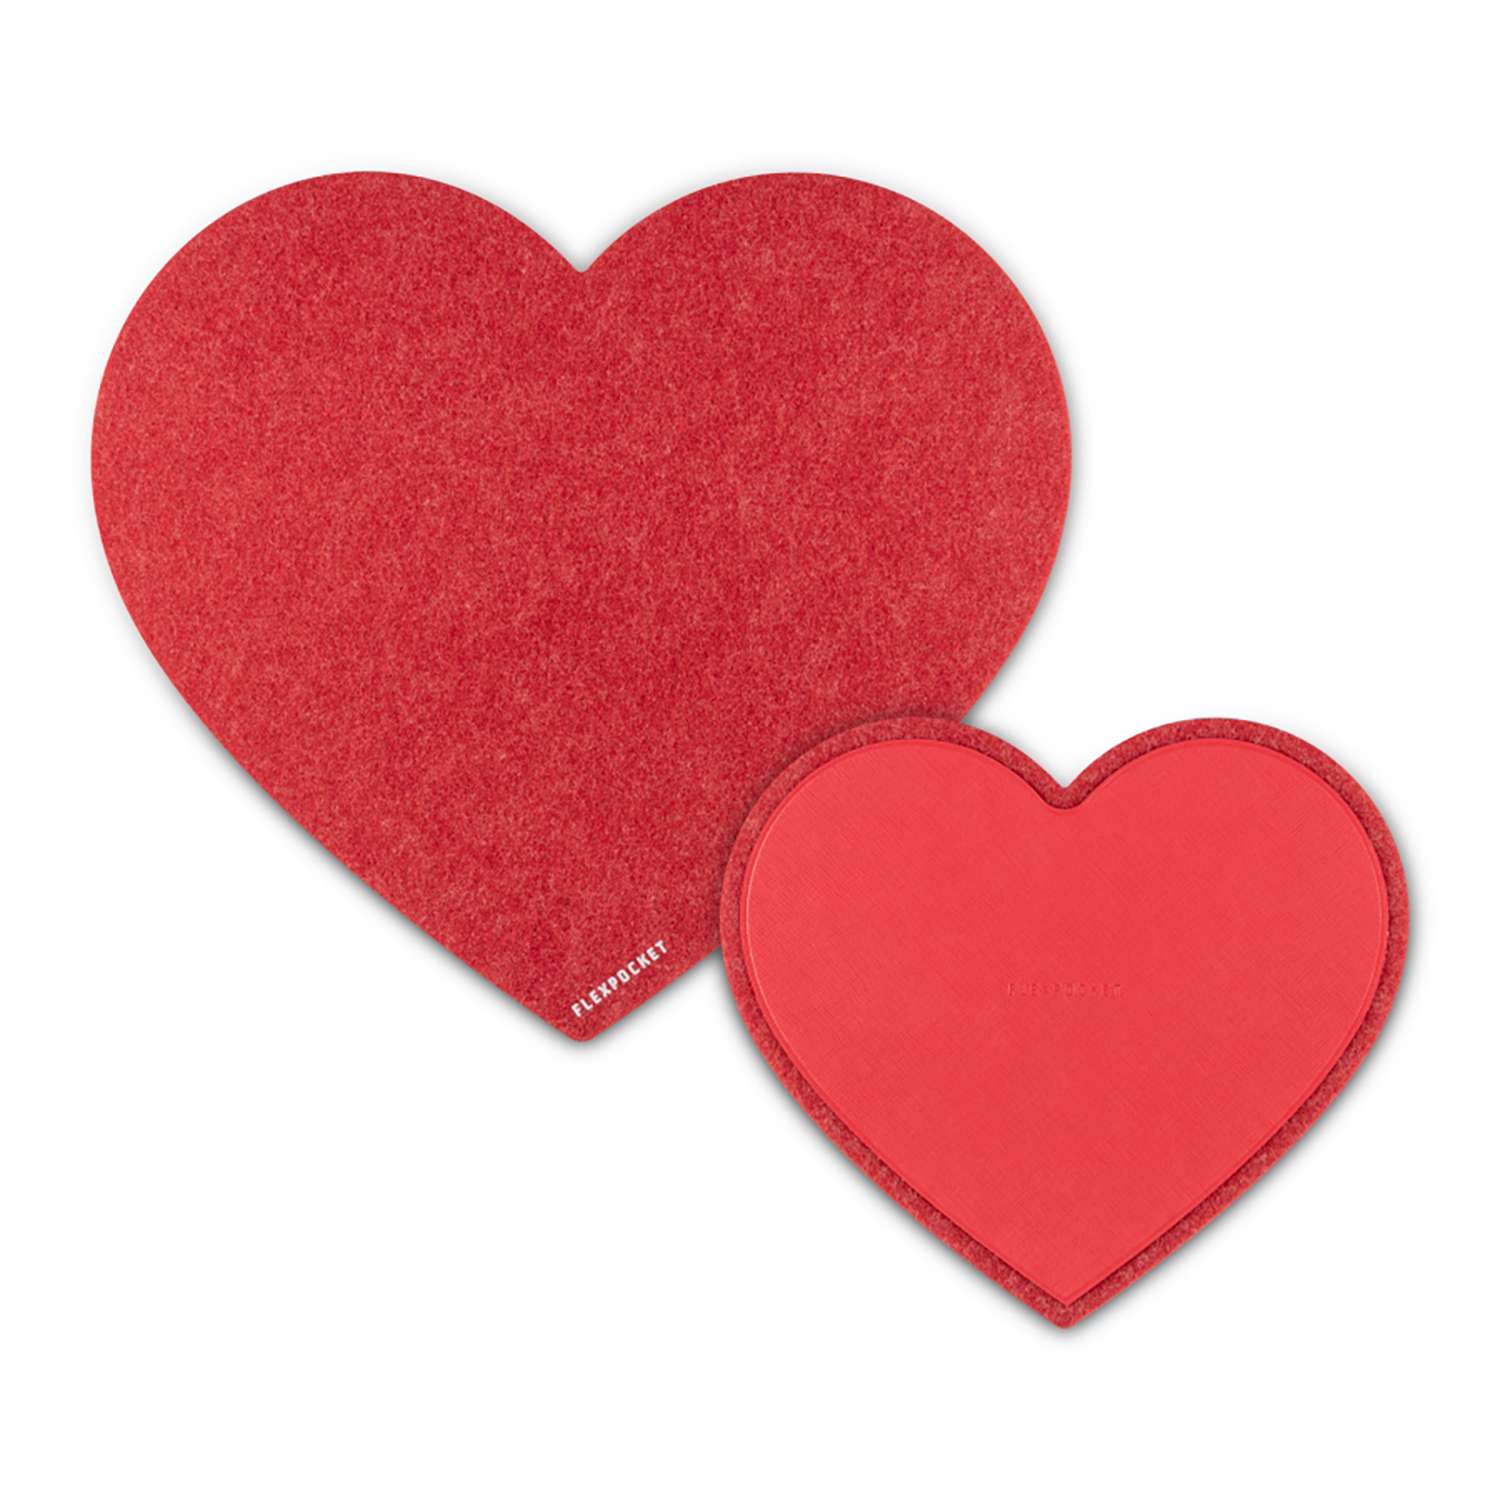 Настольный коврик Flexpocket для мыши в виде сердца с подставкой под кружку красный - фото 1